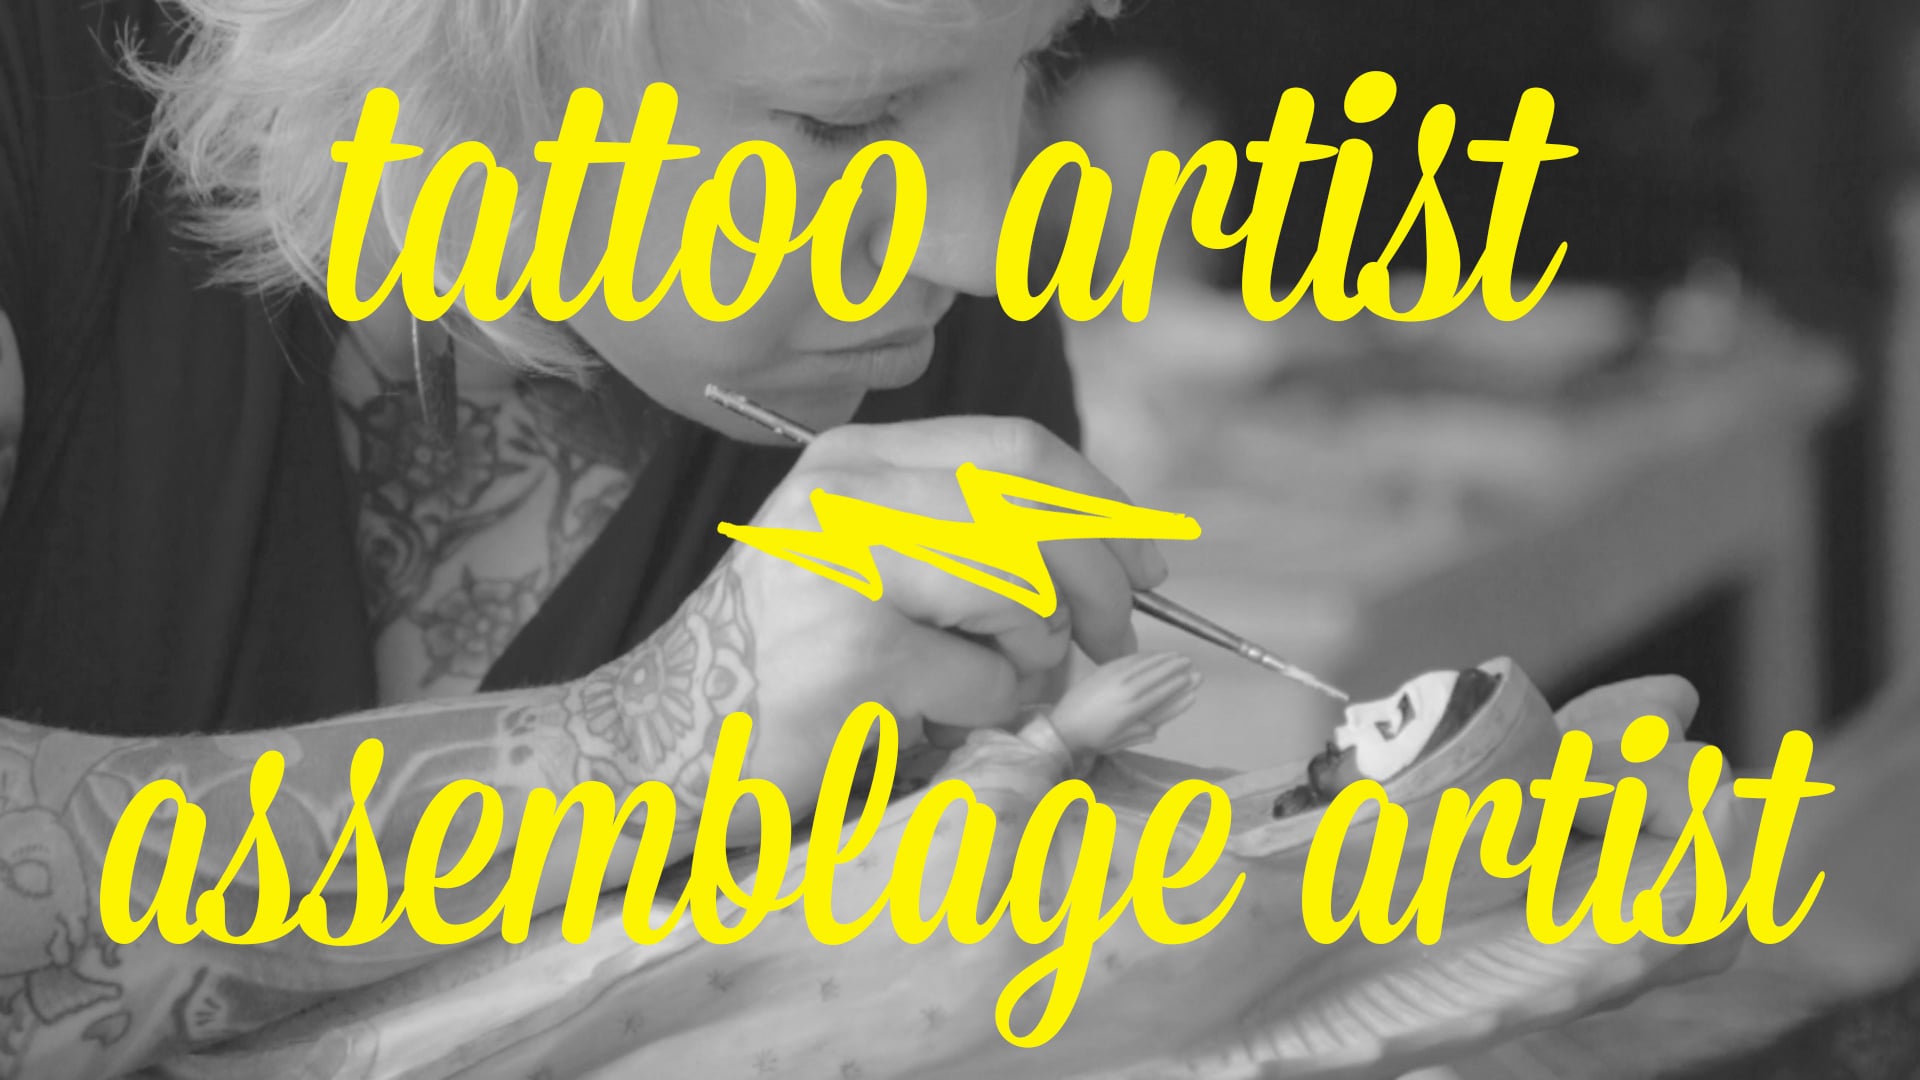 Artist Day Jobs: Jessie McNally - Tattoo Artist/Assemblage Artist